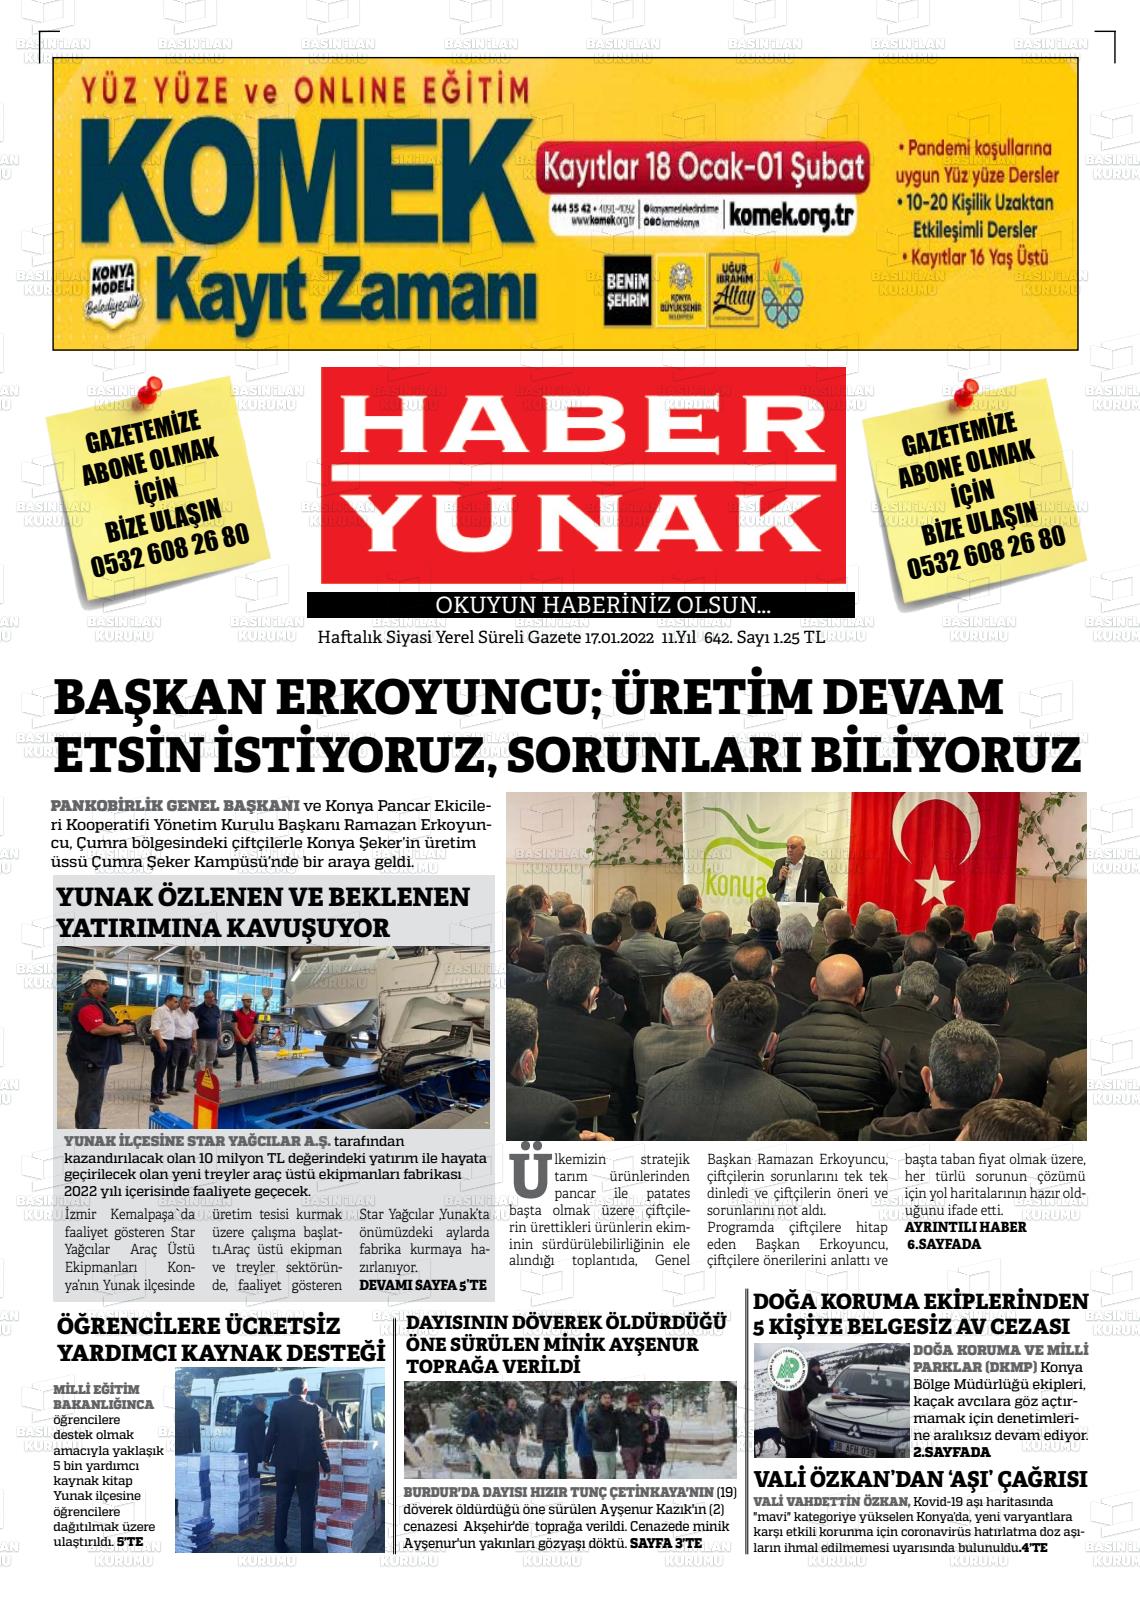 17 Ocak 2022 Haber Yunak Gazete Manşeti